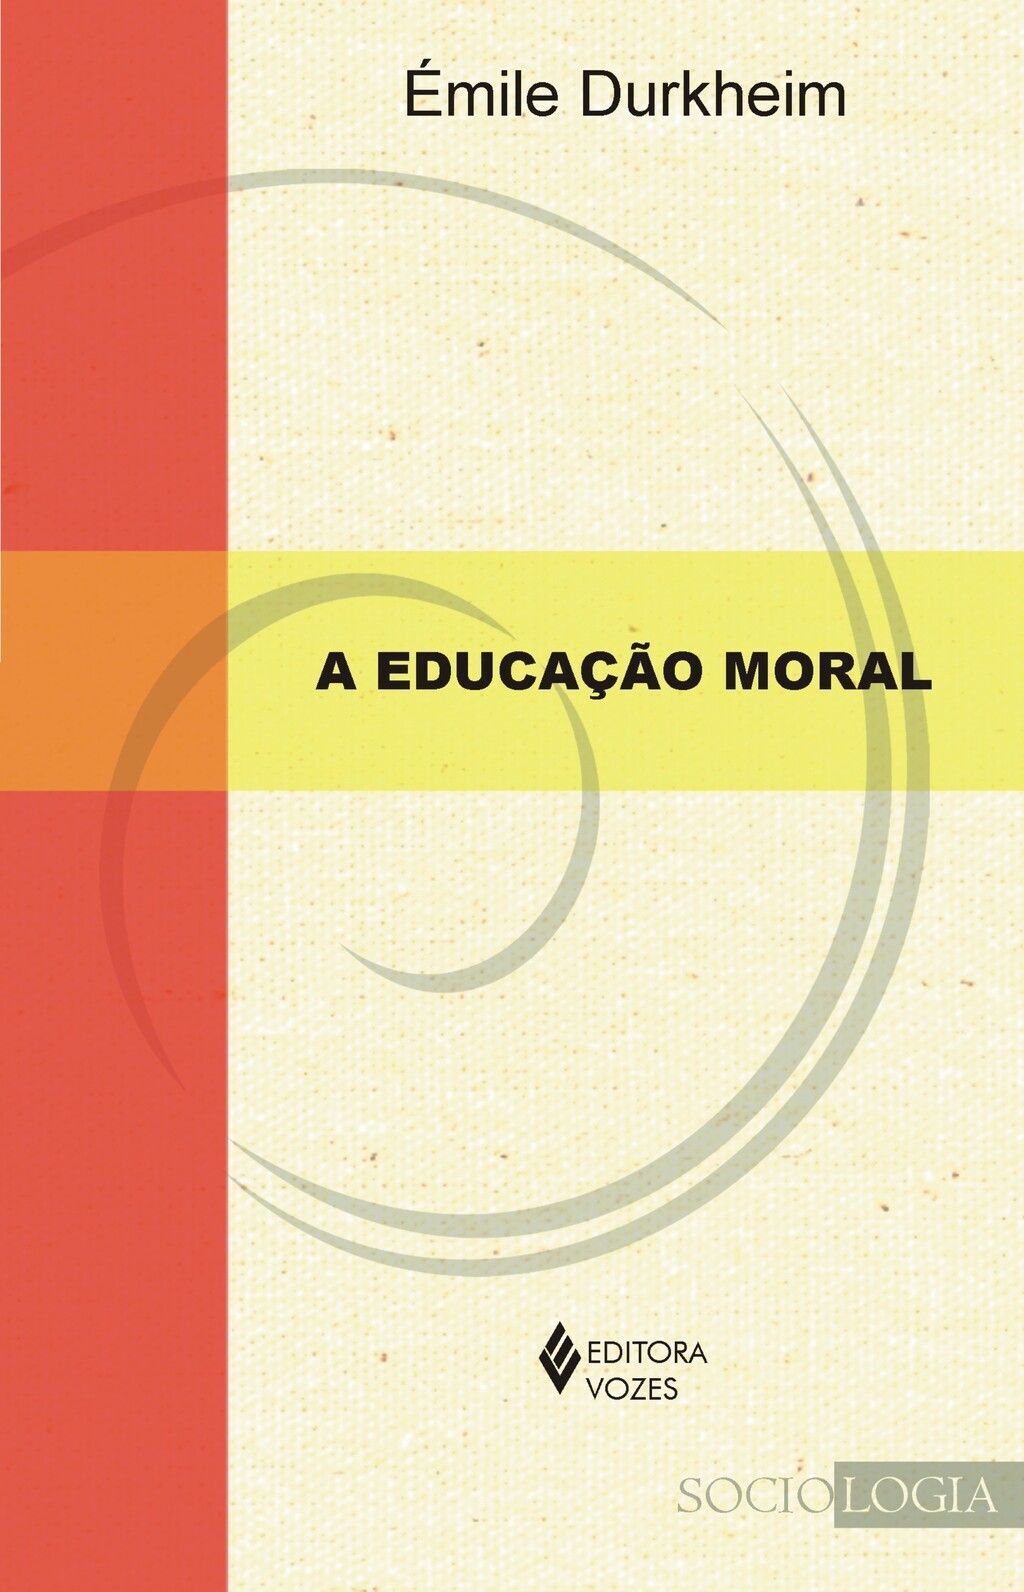 A educação moral